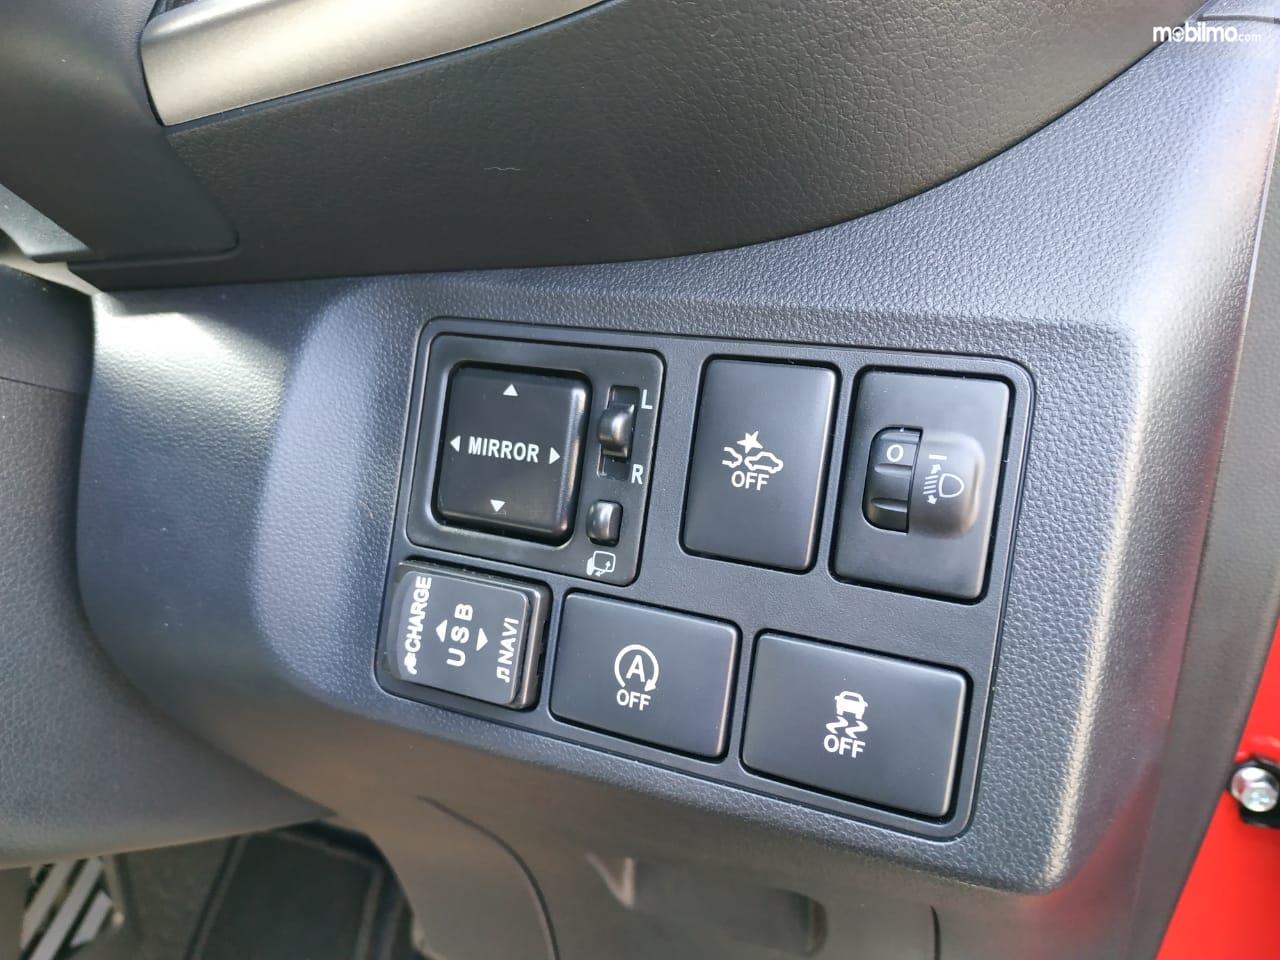 Tampak deretan tombol fitur mobil kekinian pada Daihatsu Myvi 2018